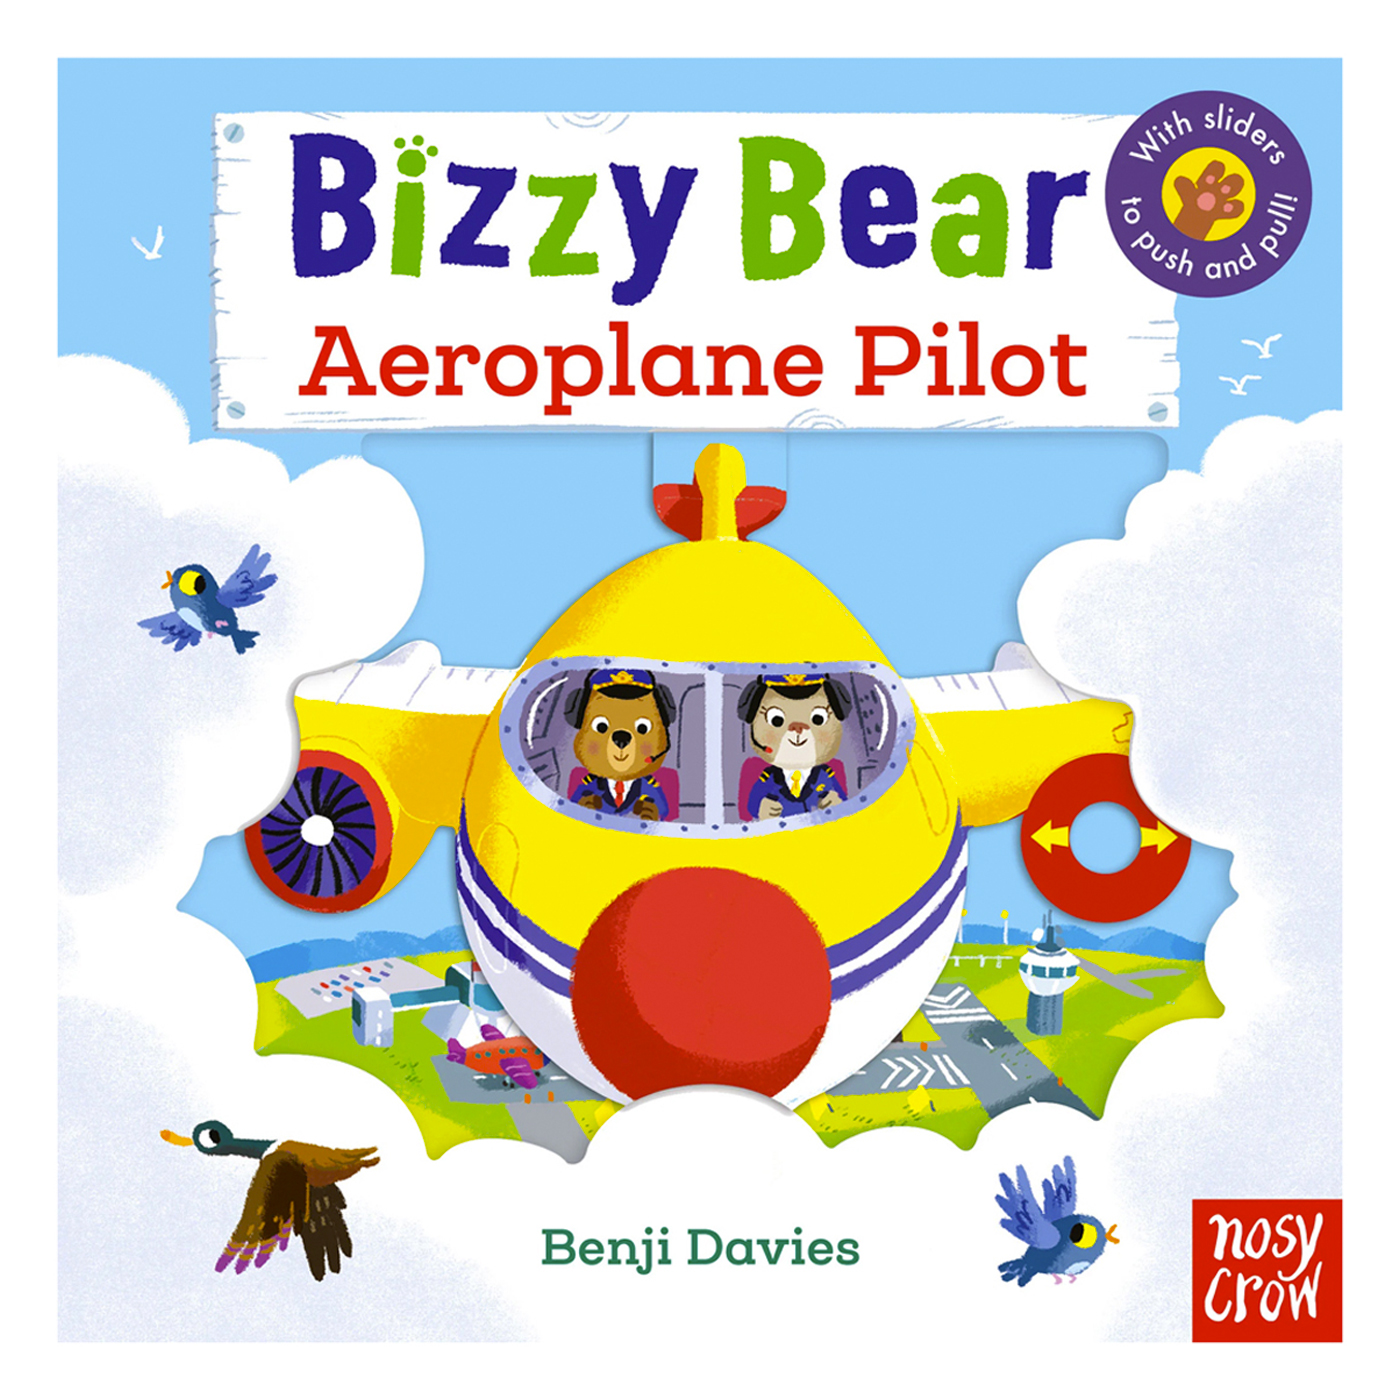  Bizzy Bear: Aeroplane Pilot